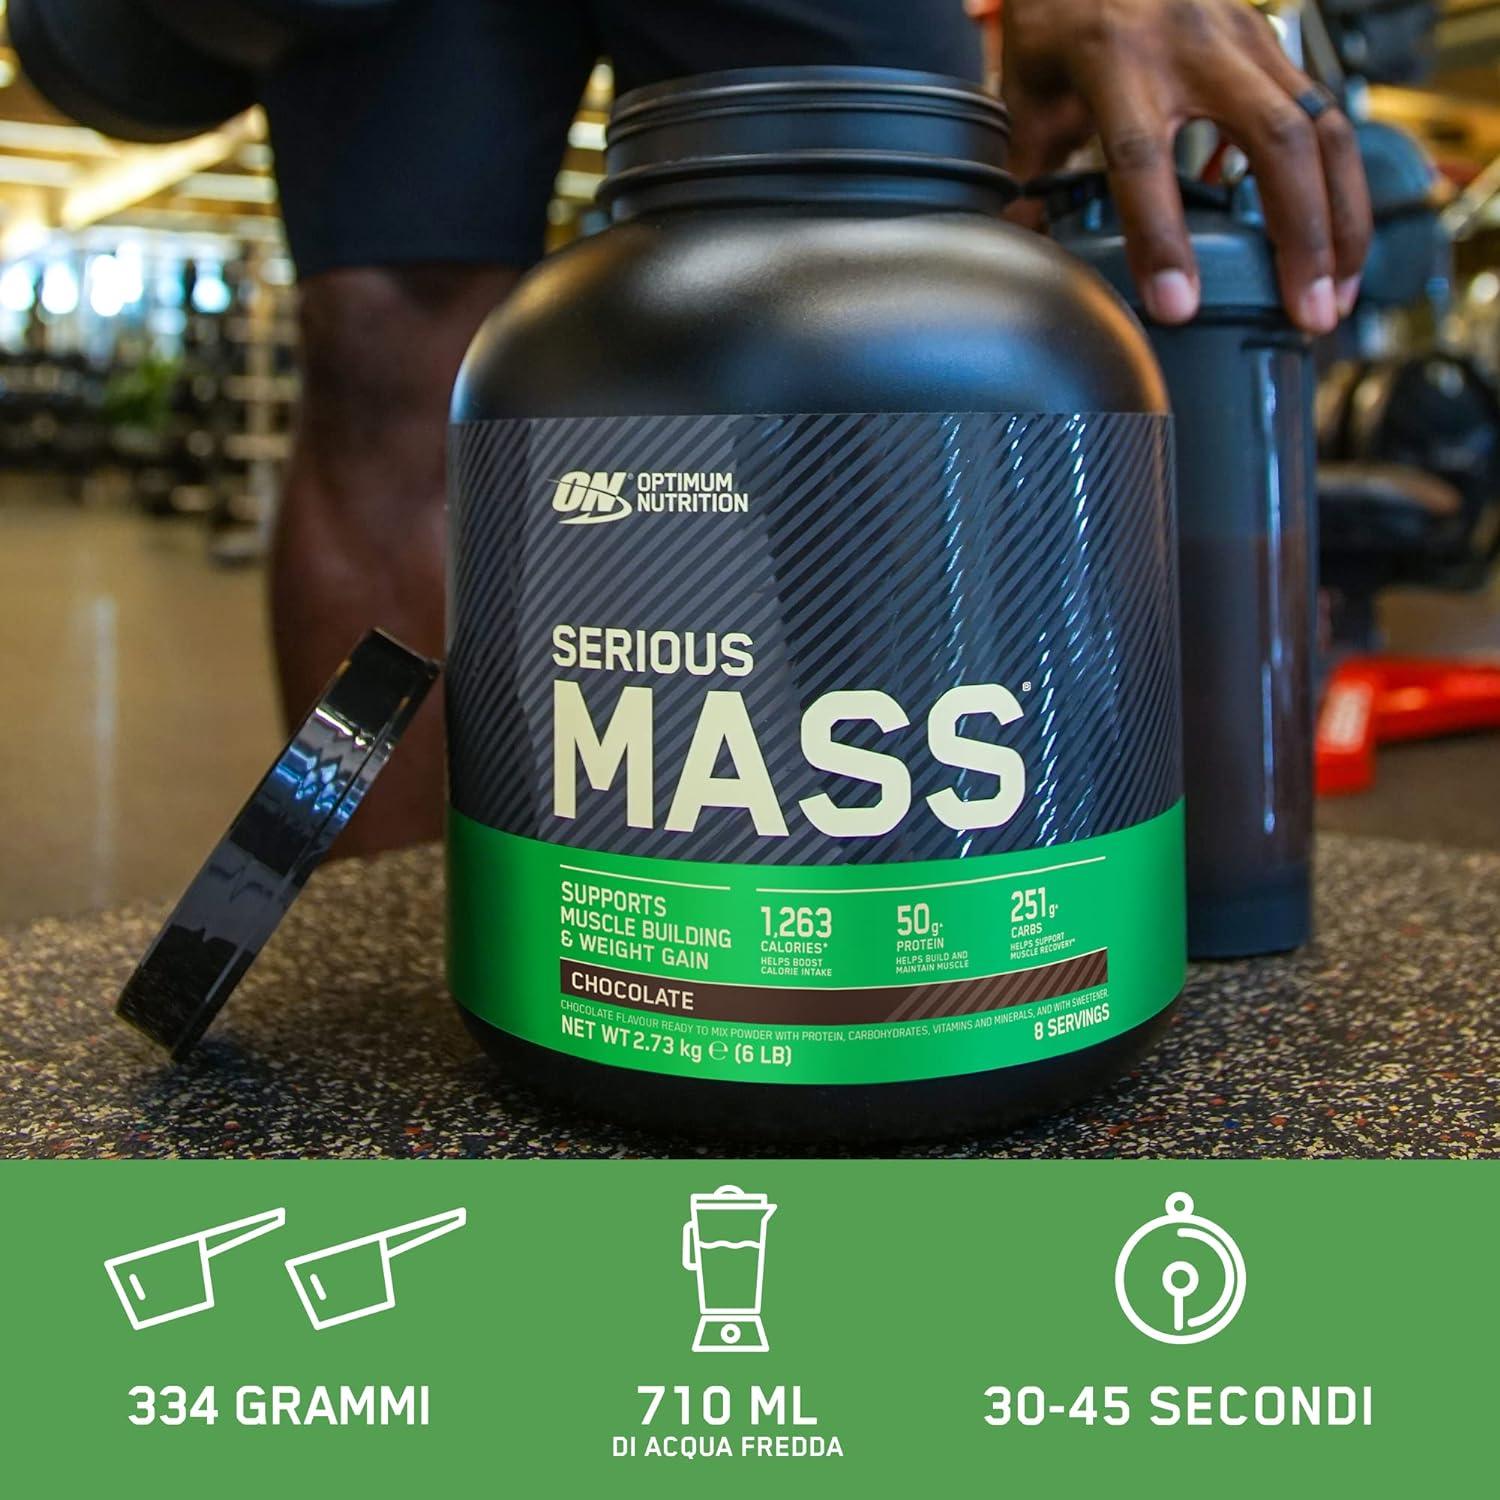 Optimum Nutrition Serious Mass 6 lbs - Wellness Shoppee